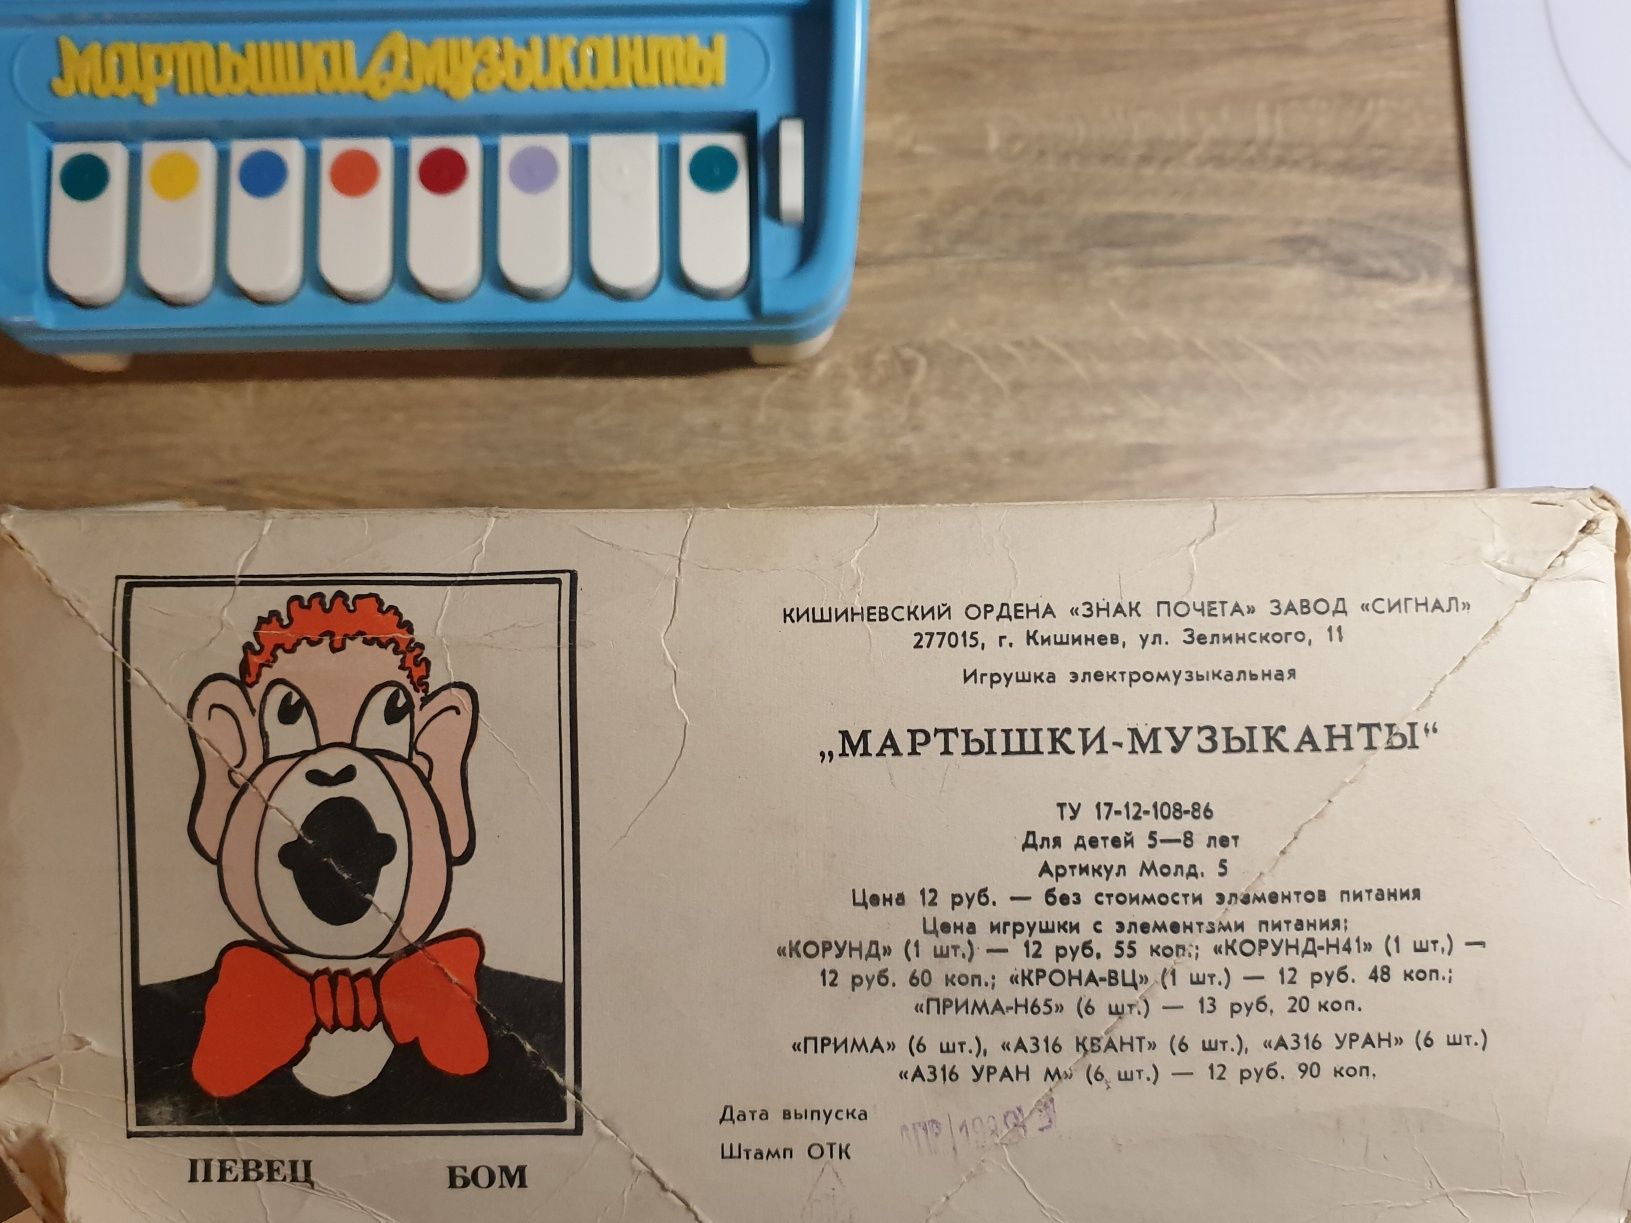 Zabawka rosyjska - pianino - "małpki muzykanty" ZSRR